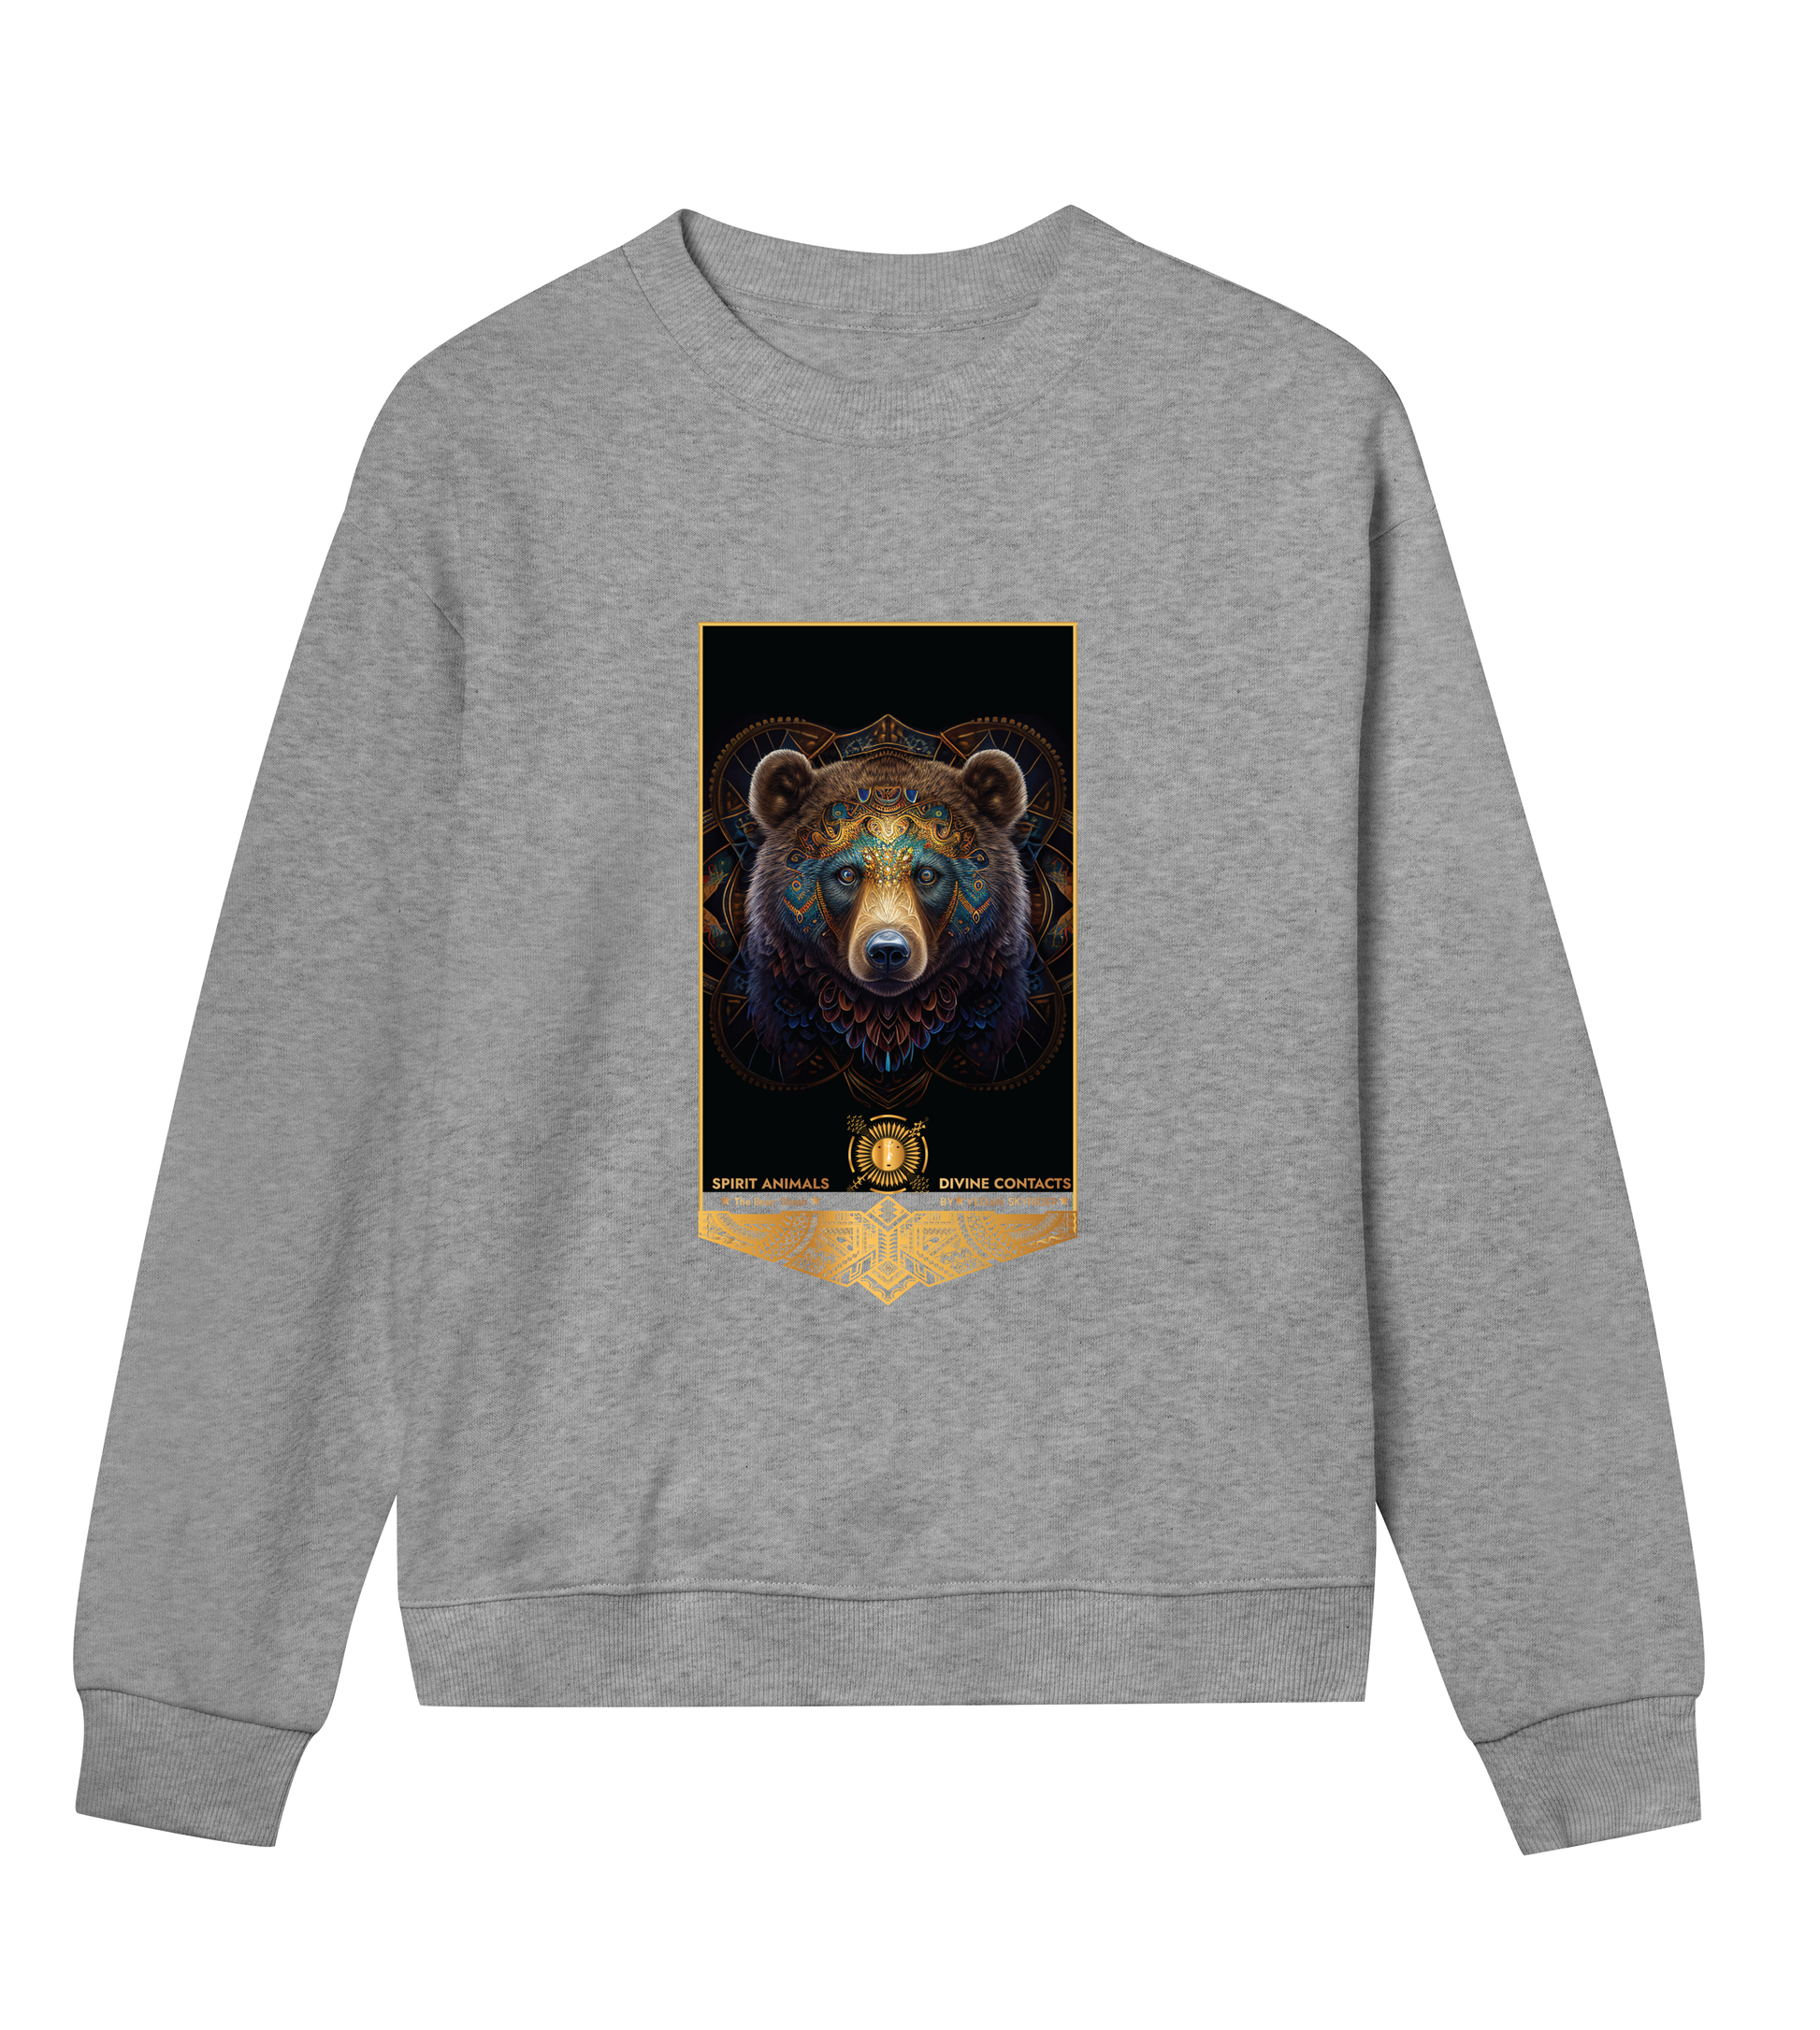 sweatshirt-grey-front- spirit-bear-indian-totem-vegan-fashion